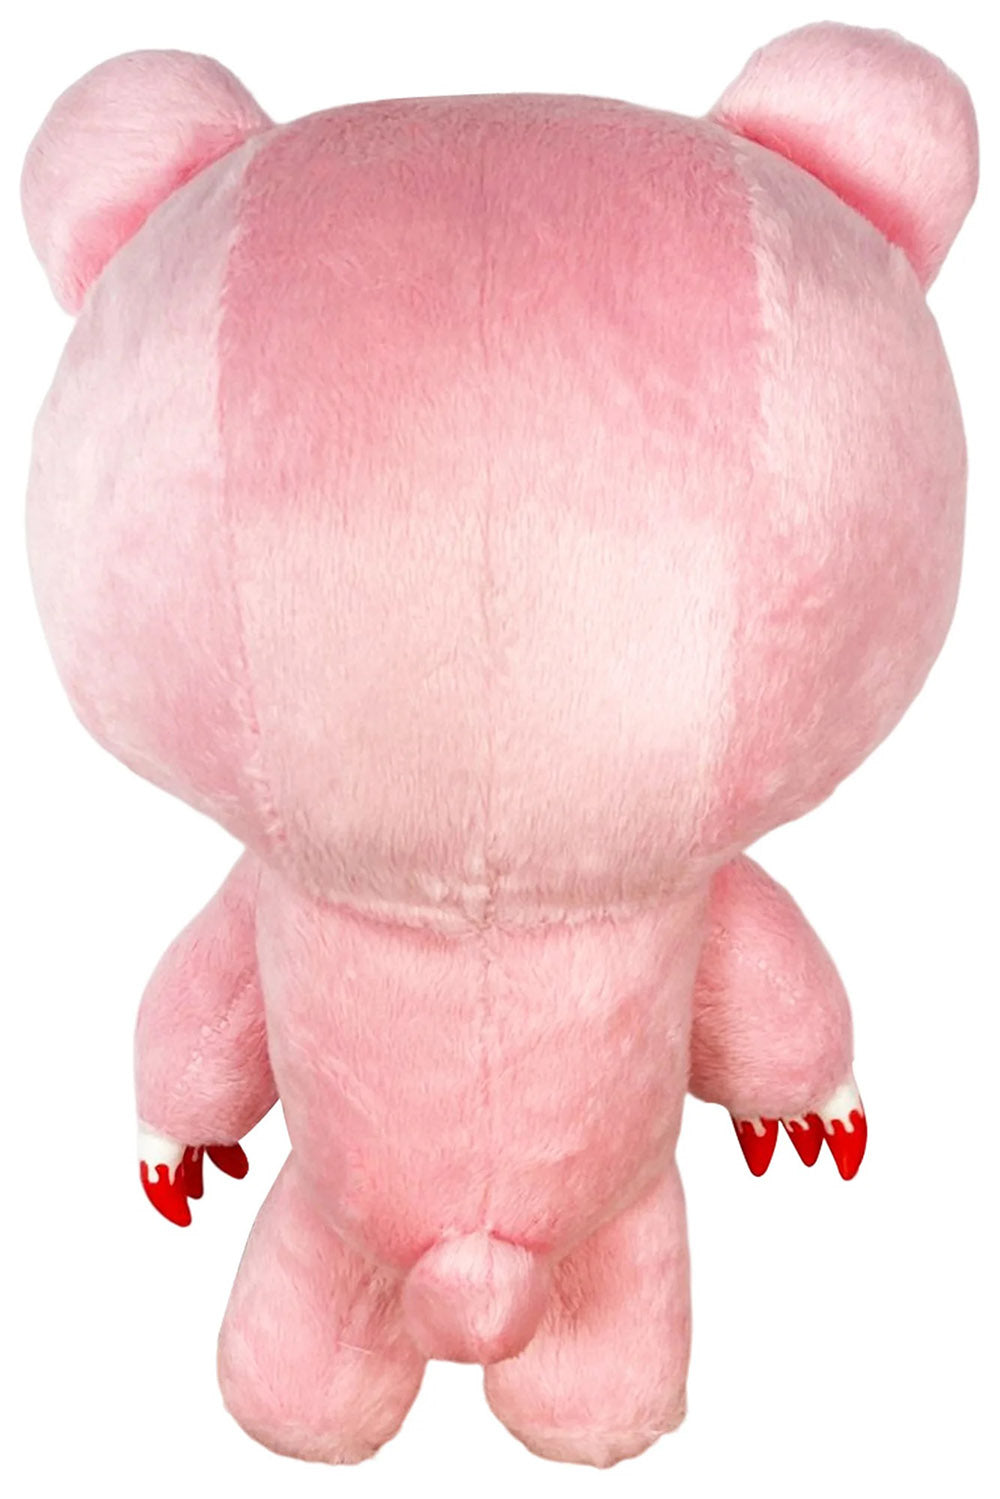 Pastel Pink Gloomy Bear Plush